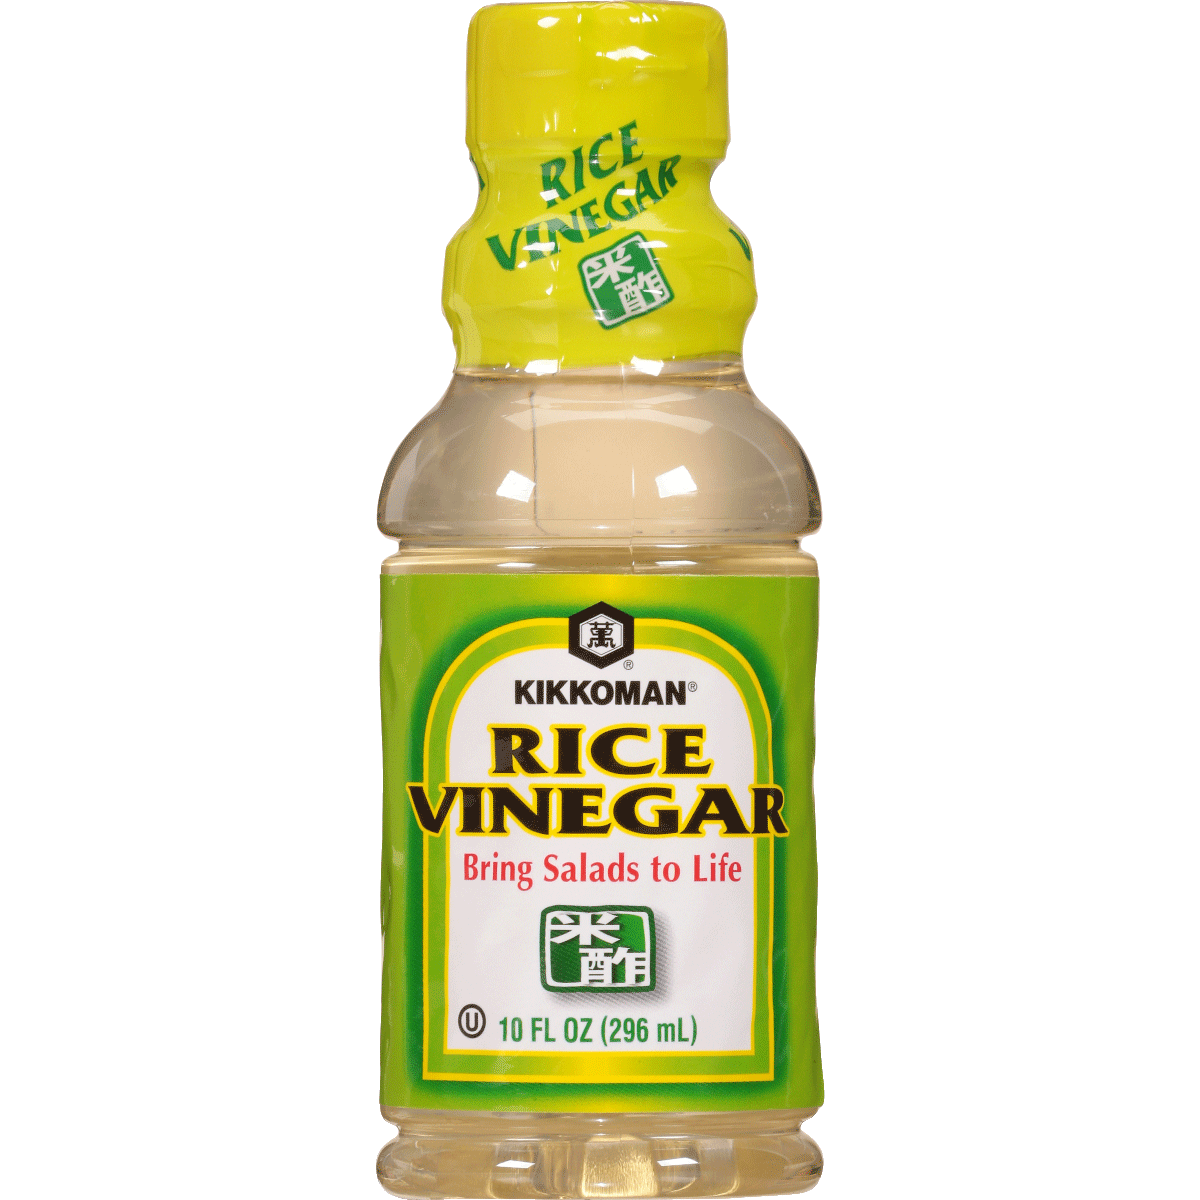 10 FL OZ Rice Vinegar